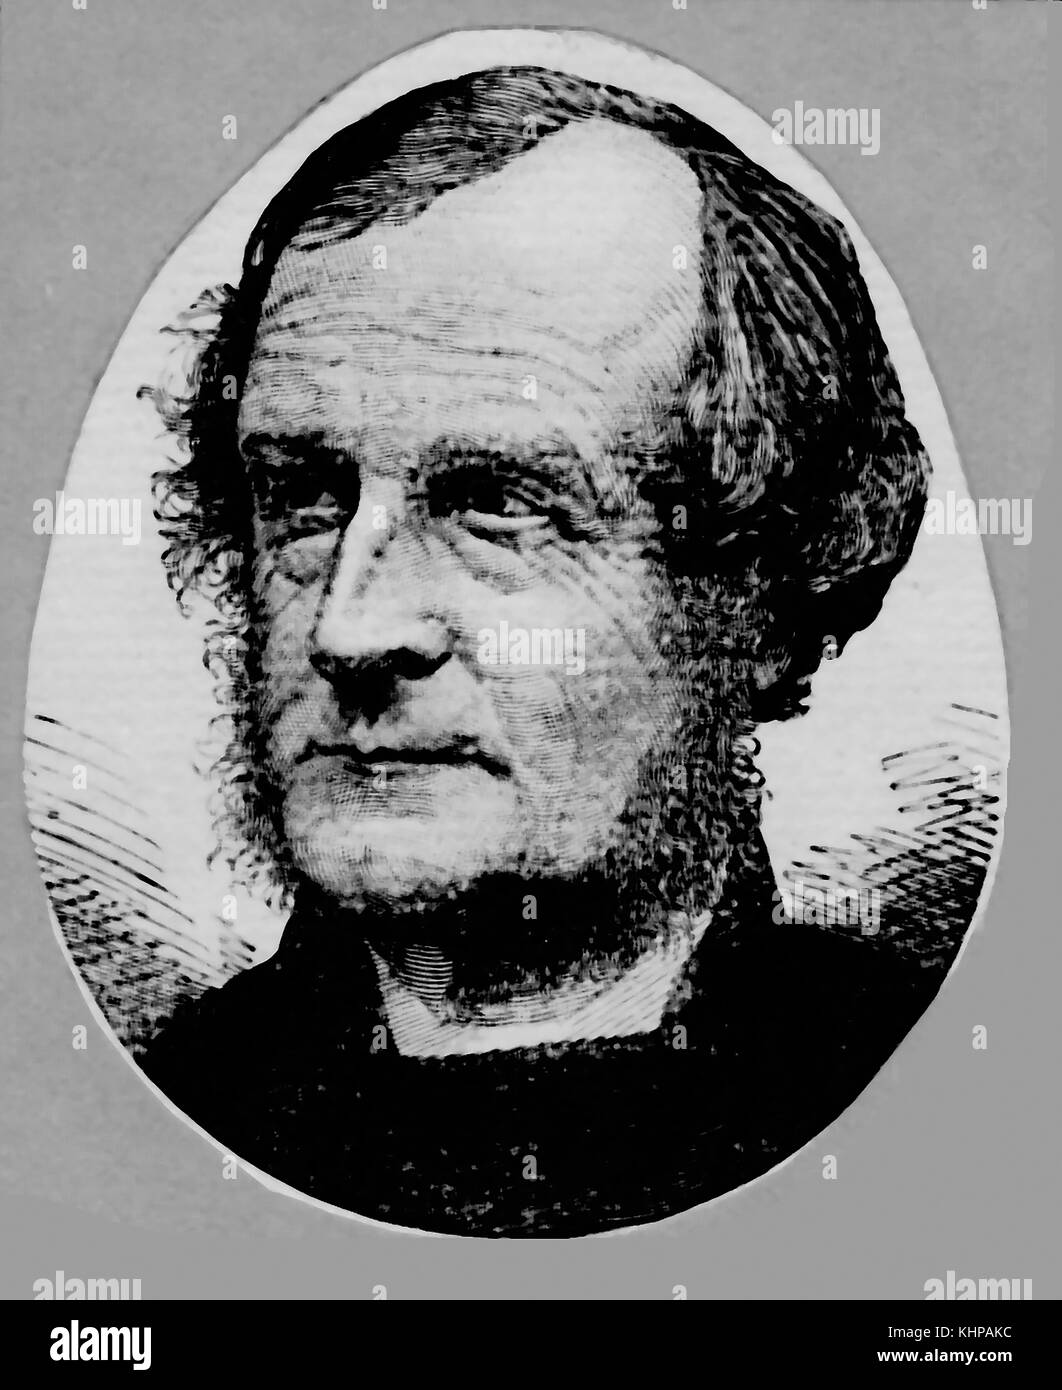 1901 Un portrait de George Augustus Selwyn, (1805-1855) Baccalauréat en MA. D.D. . Premier évêque anglican de la Nouvelle-Zélande, de l'évêque de Lichfield, l'Angleterre et fondateur de l'Voir de Mélanésie., Selwyn College, Cambridge a été fondée en son honneur Banque D'Images